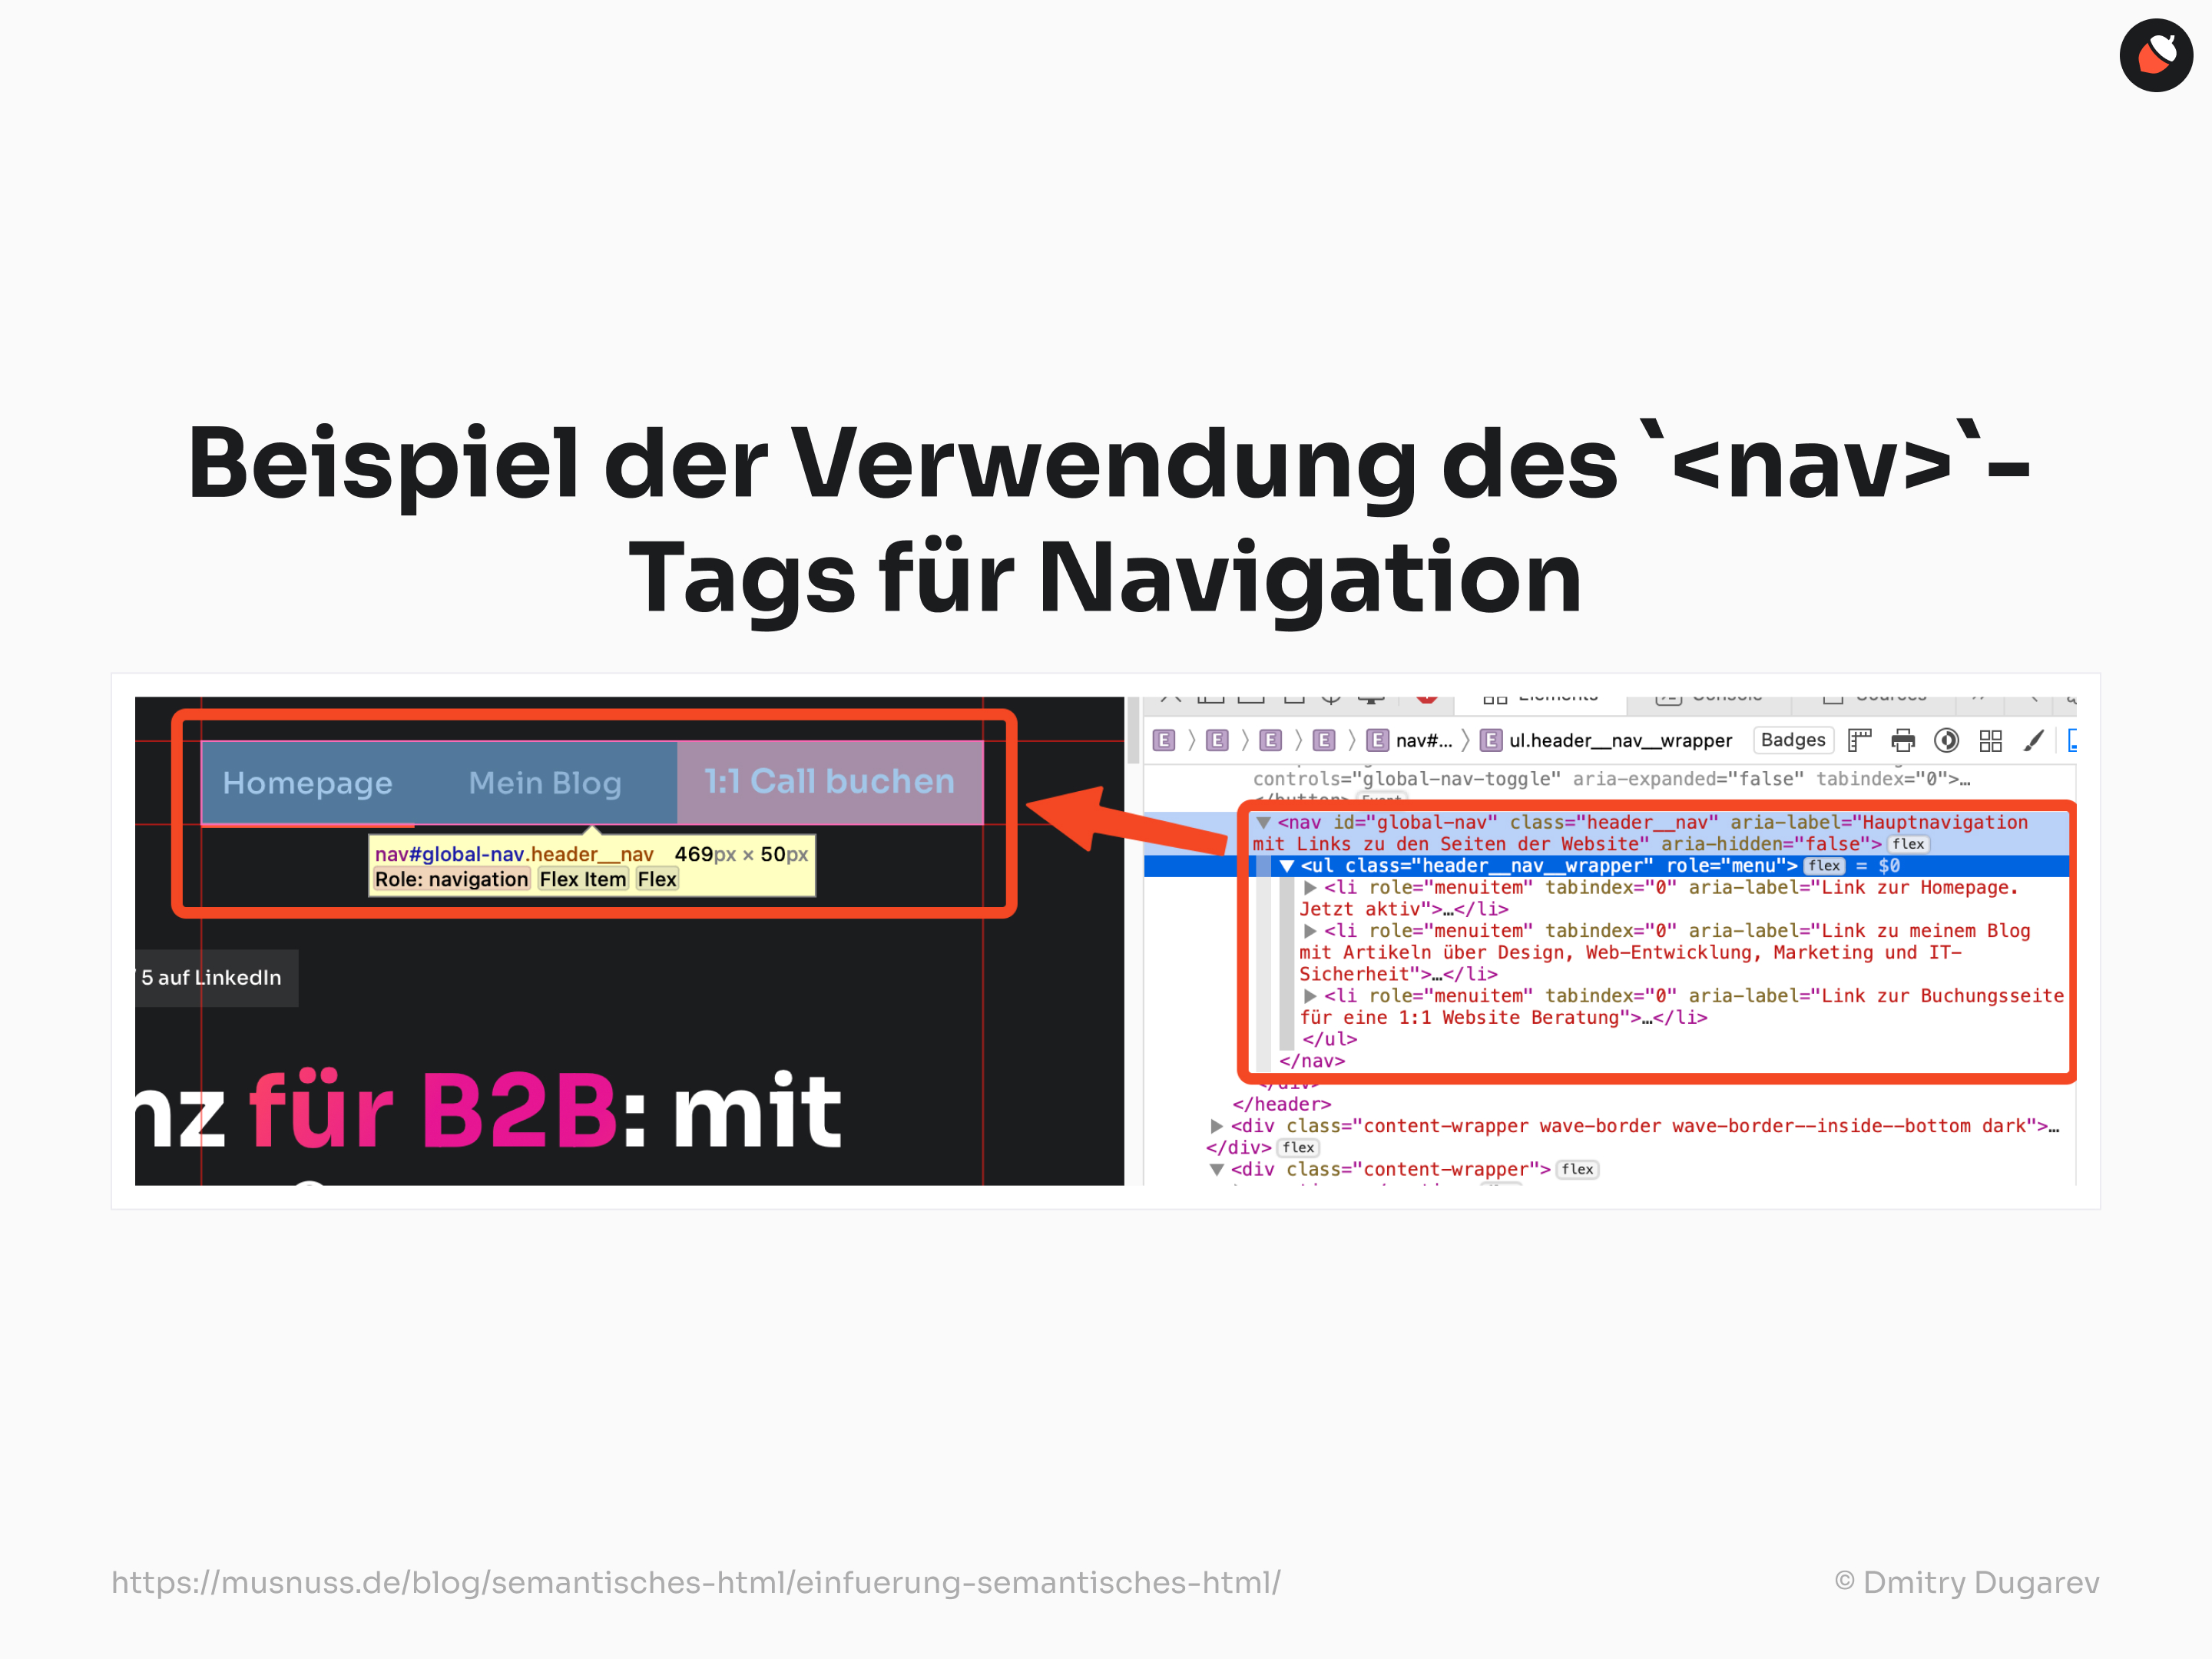 Ein Beispiel für die Verwendung des <nav>-Tags in HTML zur Navigation, das zeigt, wie Links zu verschiedenen Seiten der Website strukturiert werden.